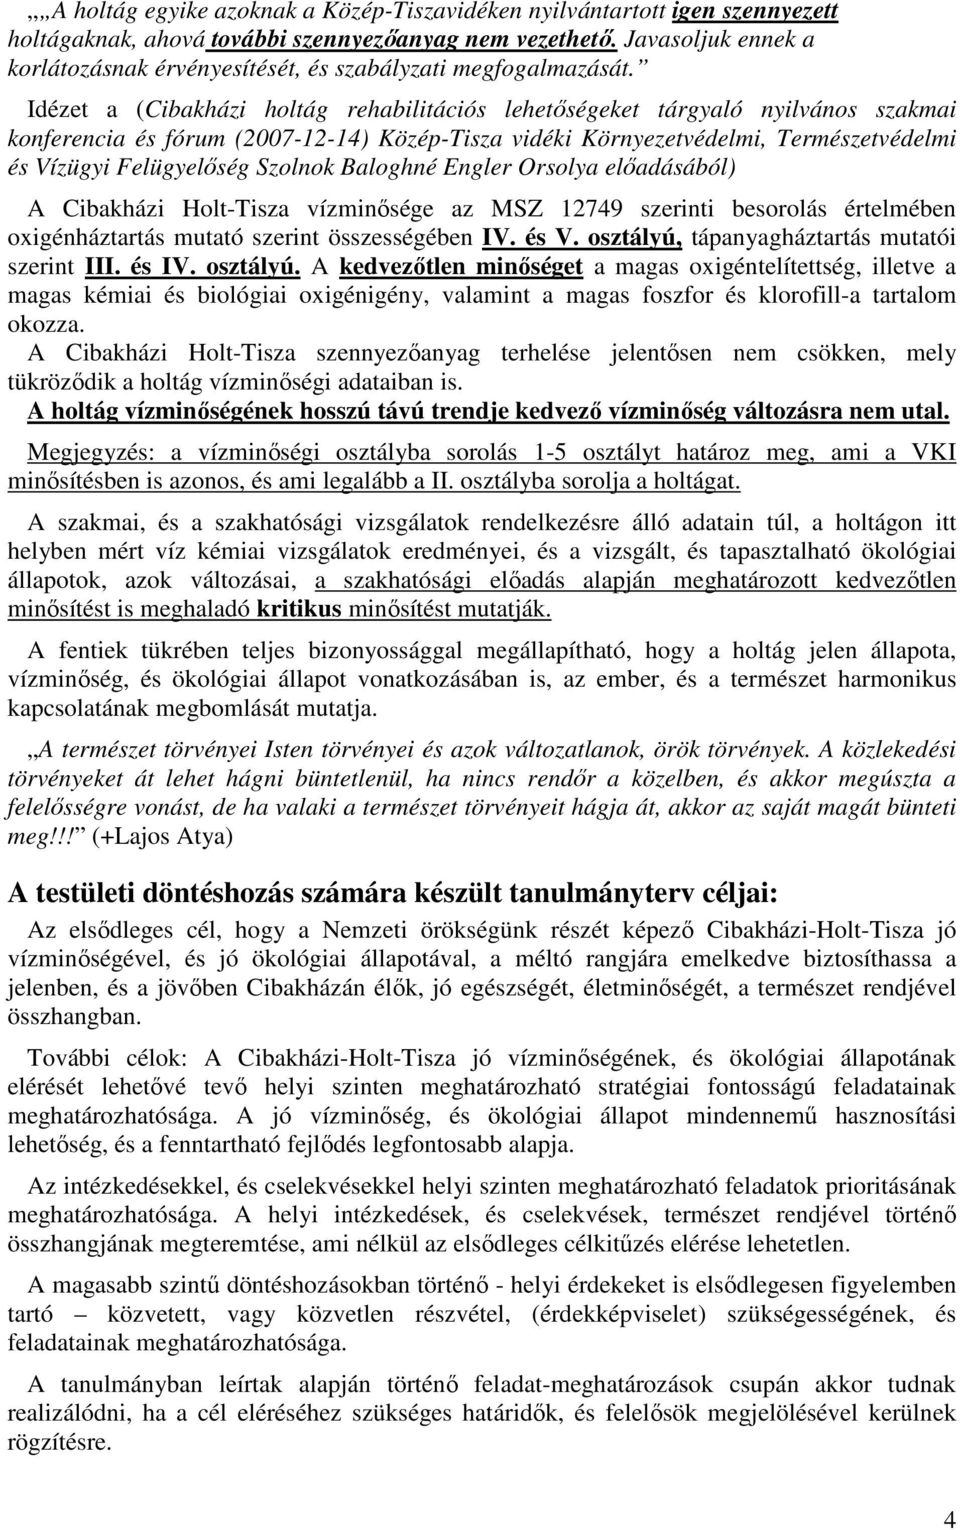 Idézet a (Cibakházi holtág rehabilitációs lehetıségeket tárgyaló nyilvános szakmai konferencia és fórum (2007-12-14) Közép-Tisza vidéki Környezetvédelmi, Természetvédelmi és Vízügyi Felügyelıség